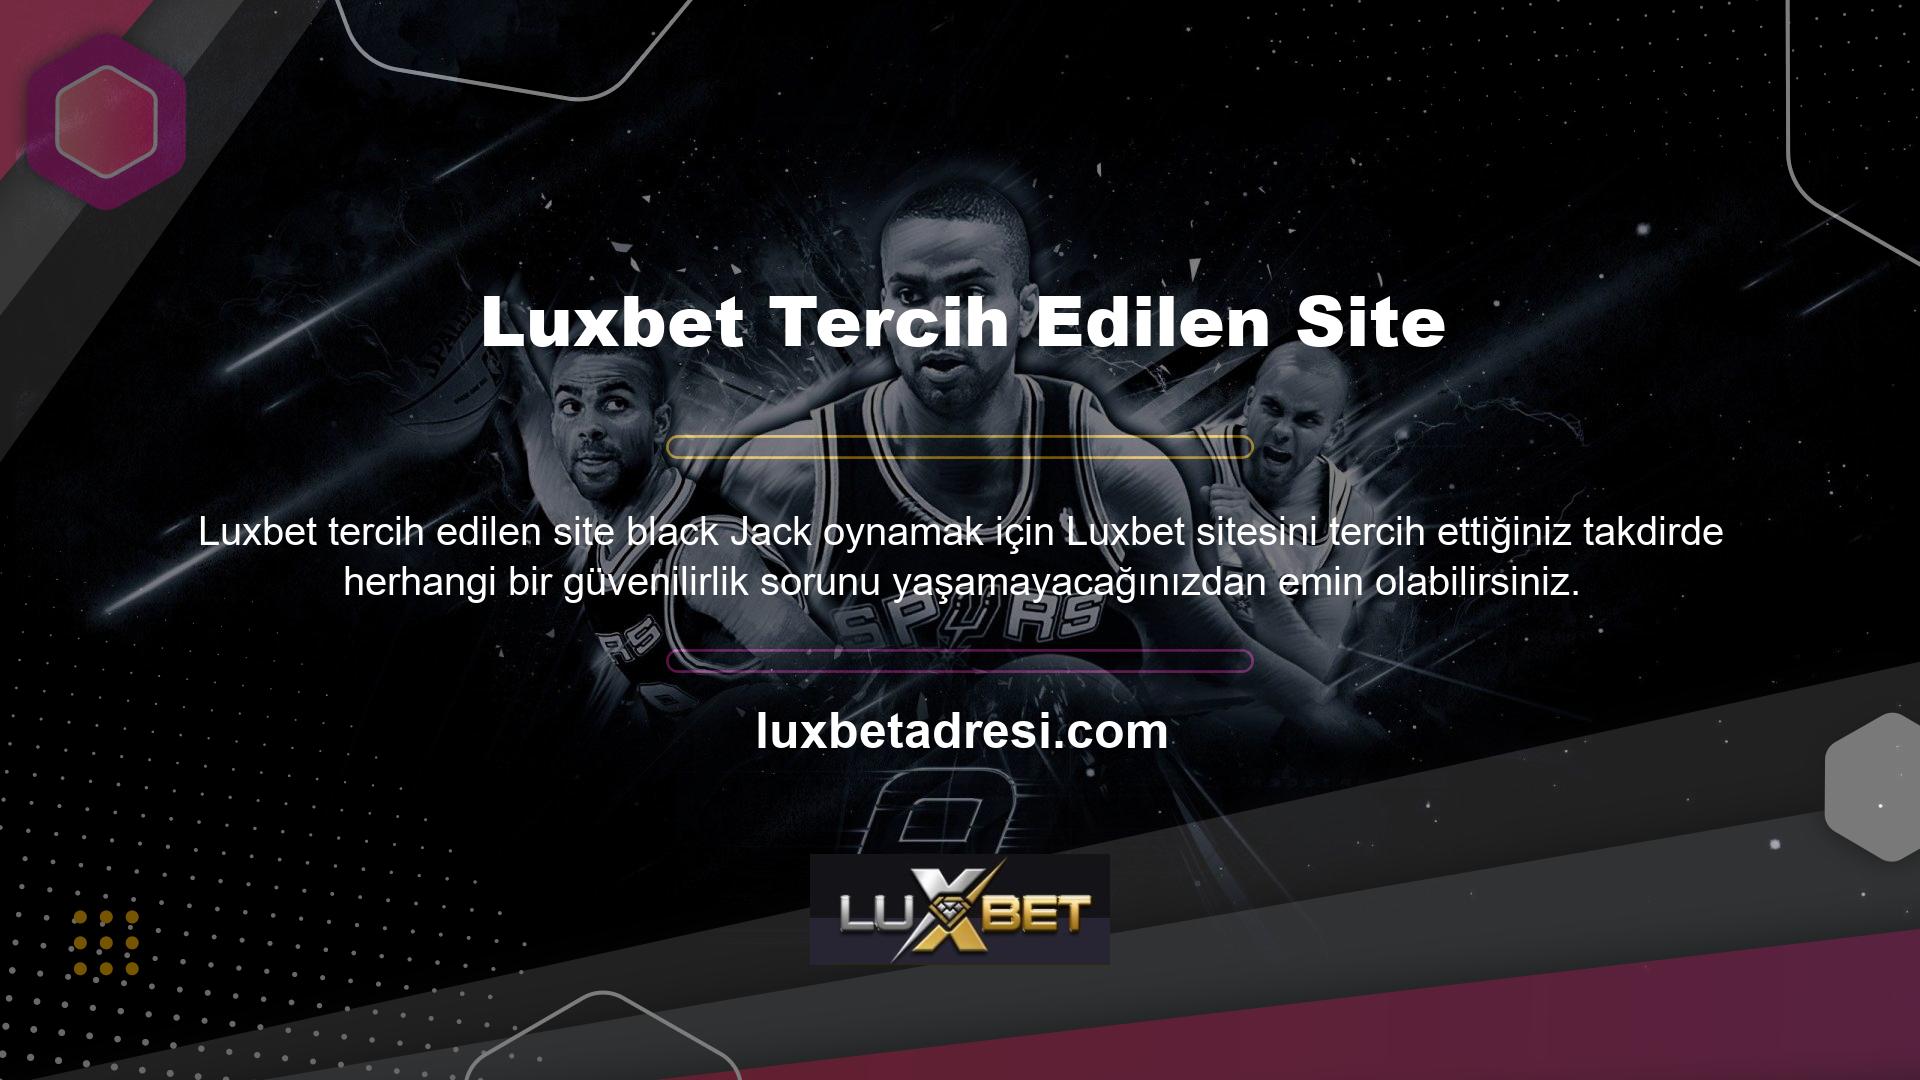 Luxbet Black Jack oyunlarına neden güvenmelisiniz? Bu lisans belgesi adil, şeffaf, tarafsız, güvenilir ve denetlenen bir Black Jack oyunu veya herhangi bir oyun veya hizmet anlamına gelir